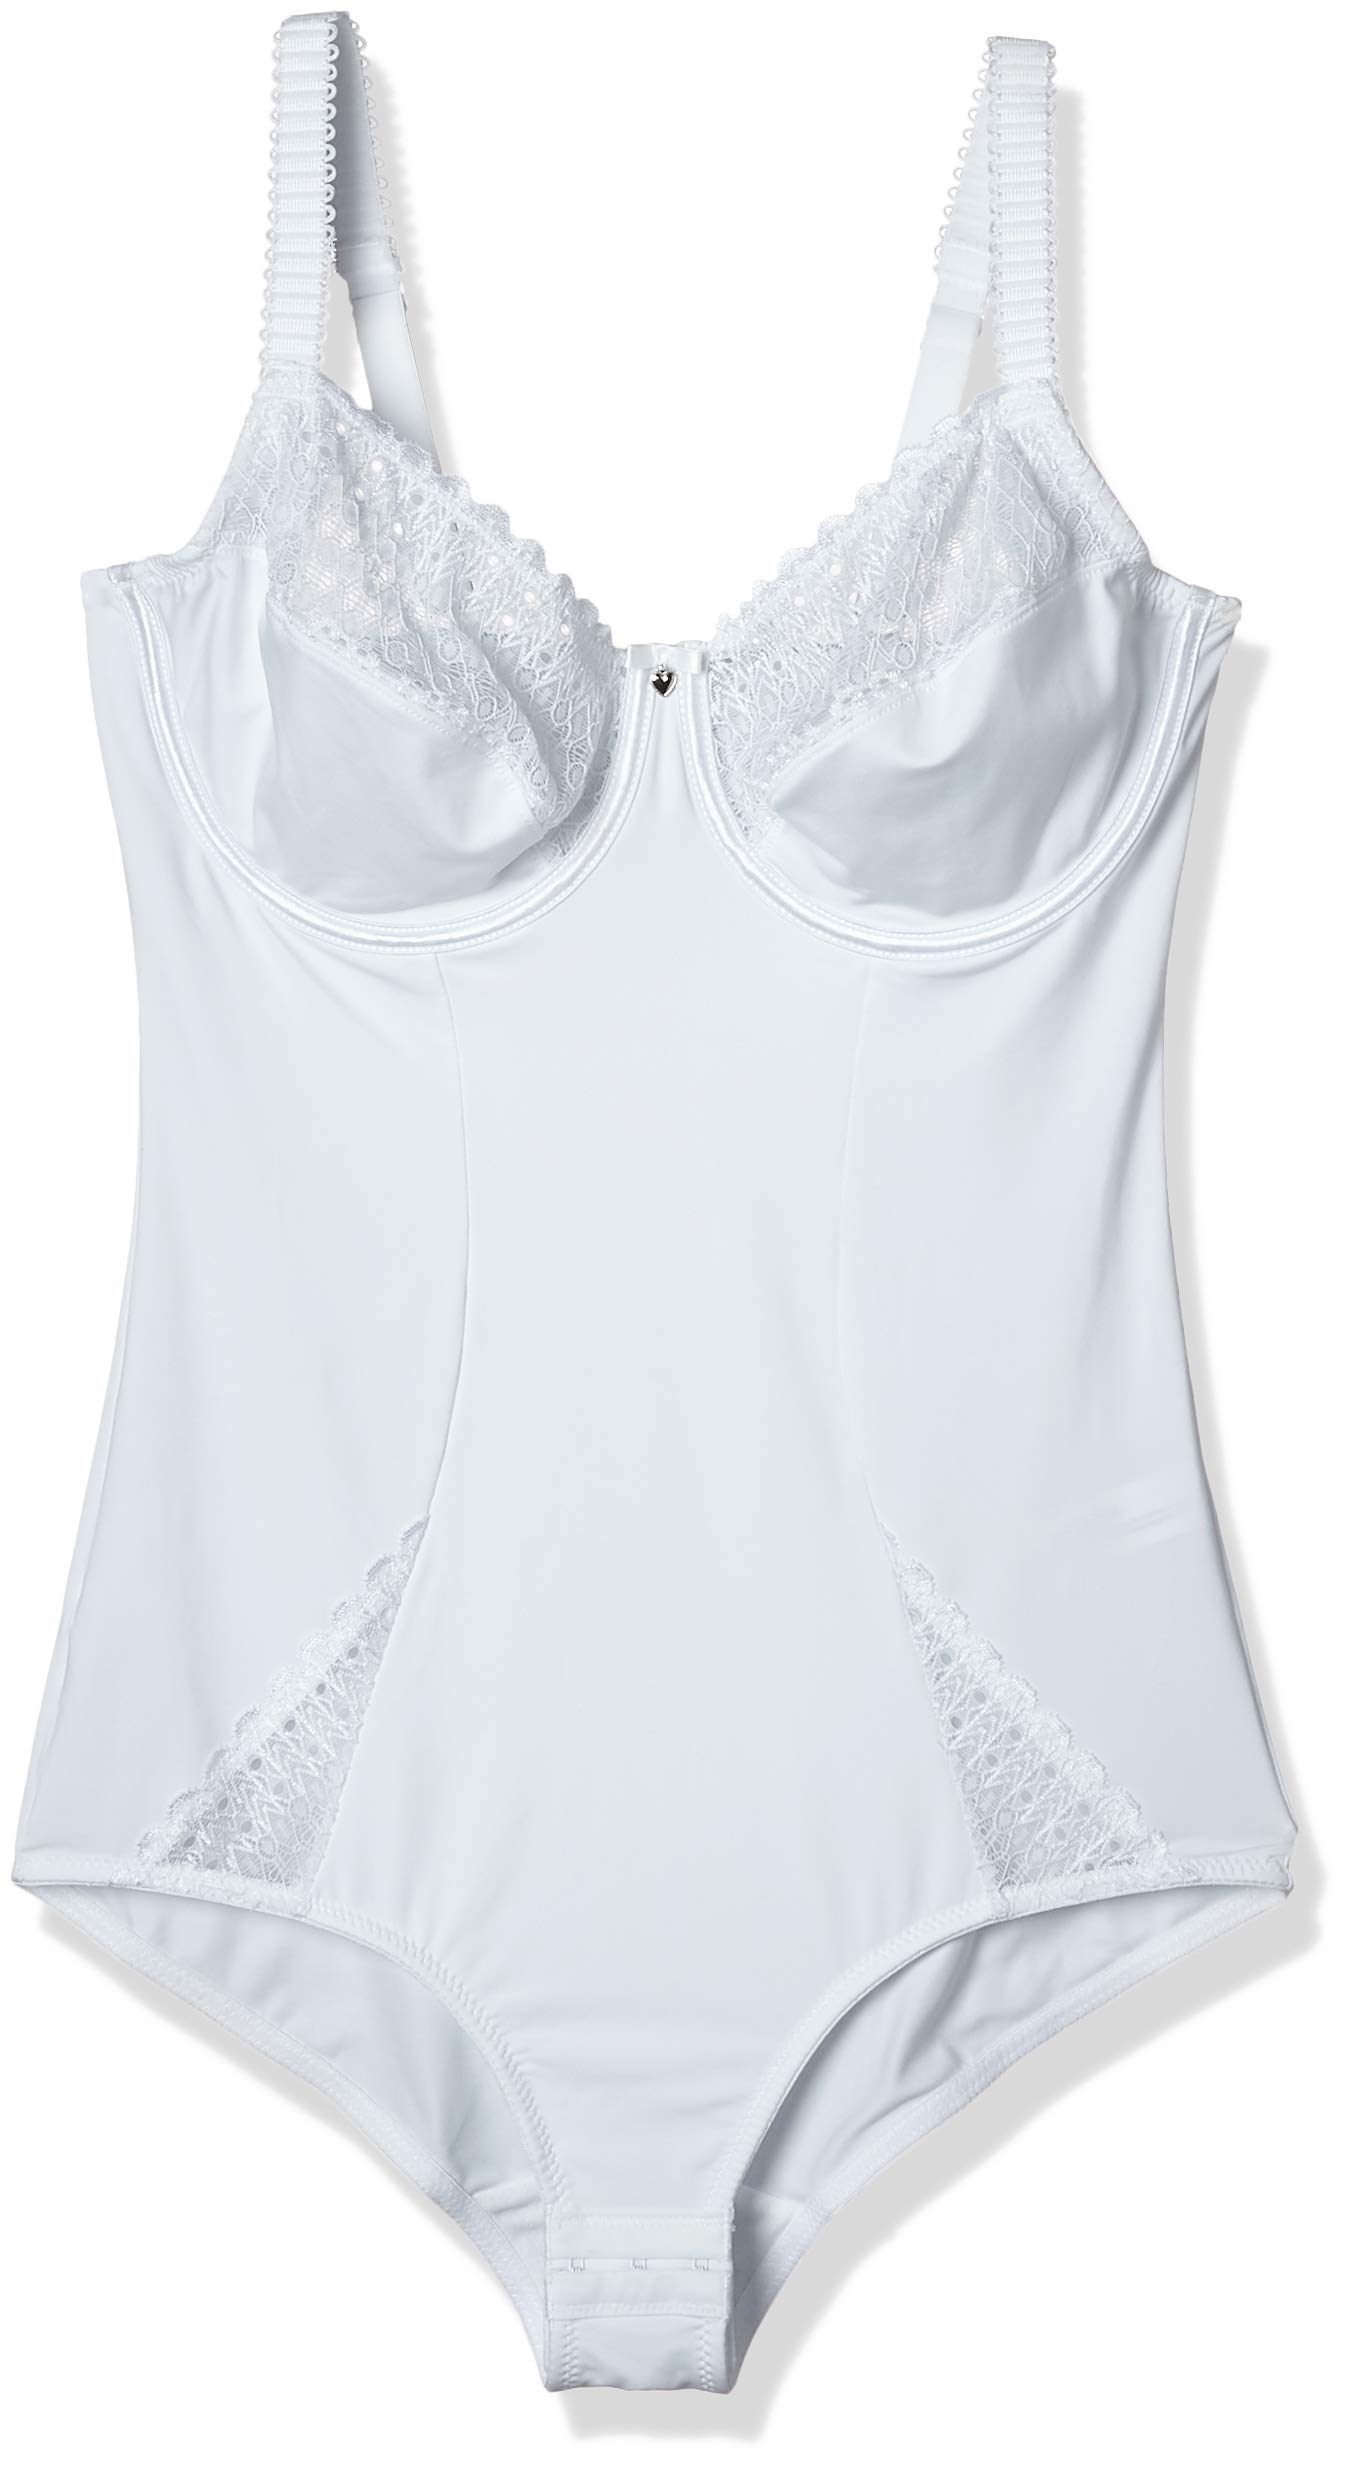 Sassa Damen Formender Body Body 989, Gr. 44 (Herstellergröße: 90D), Weiß (Weiß 100)